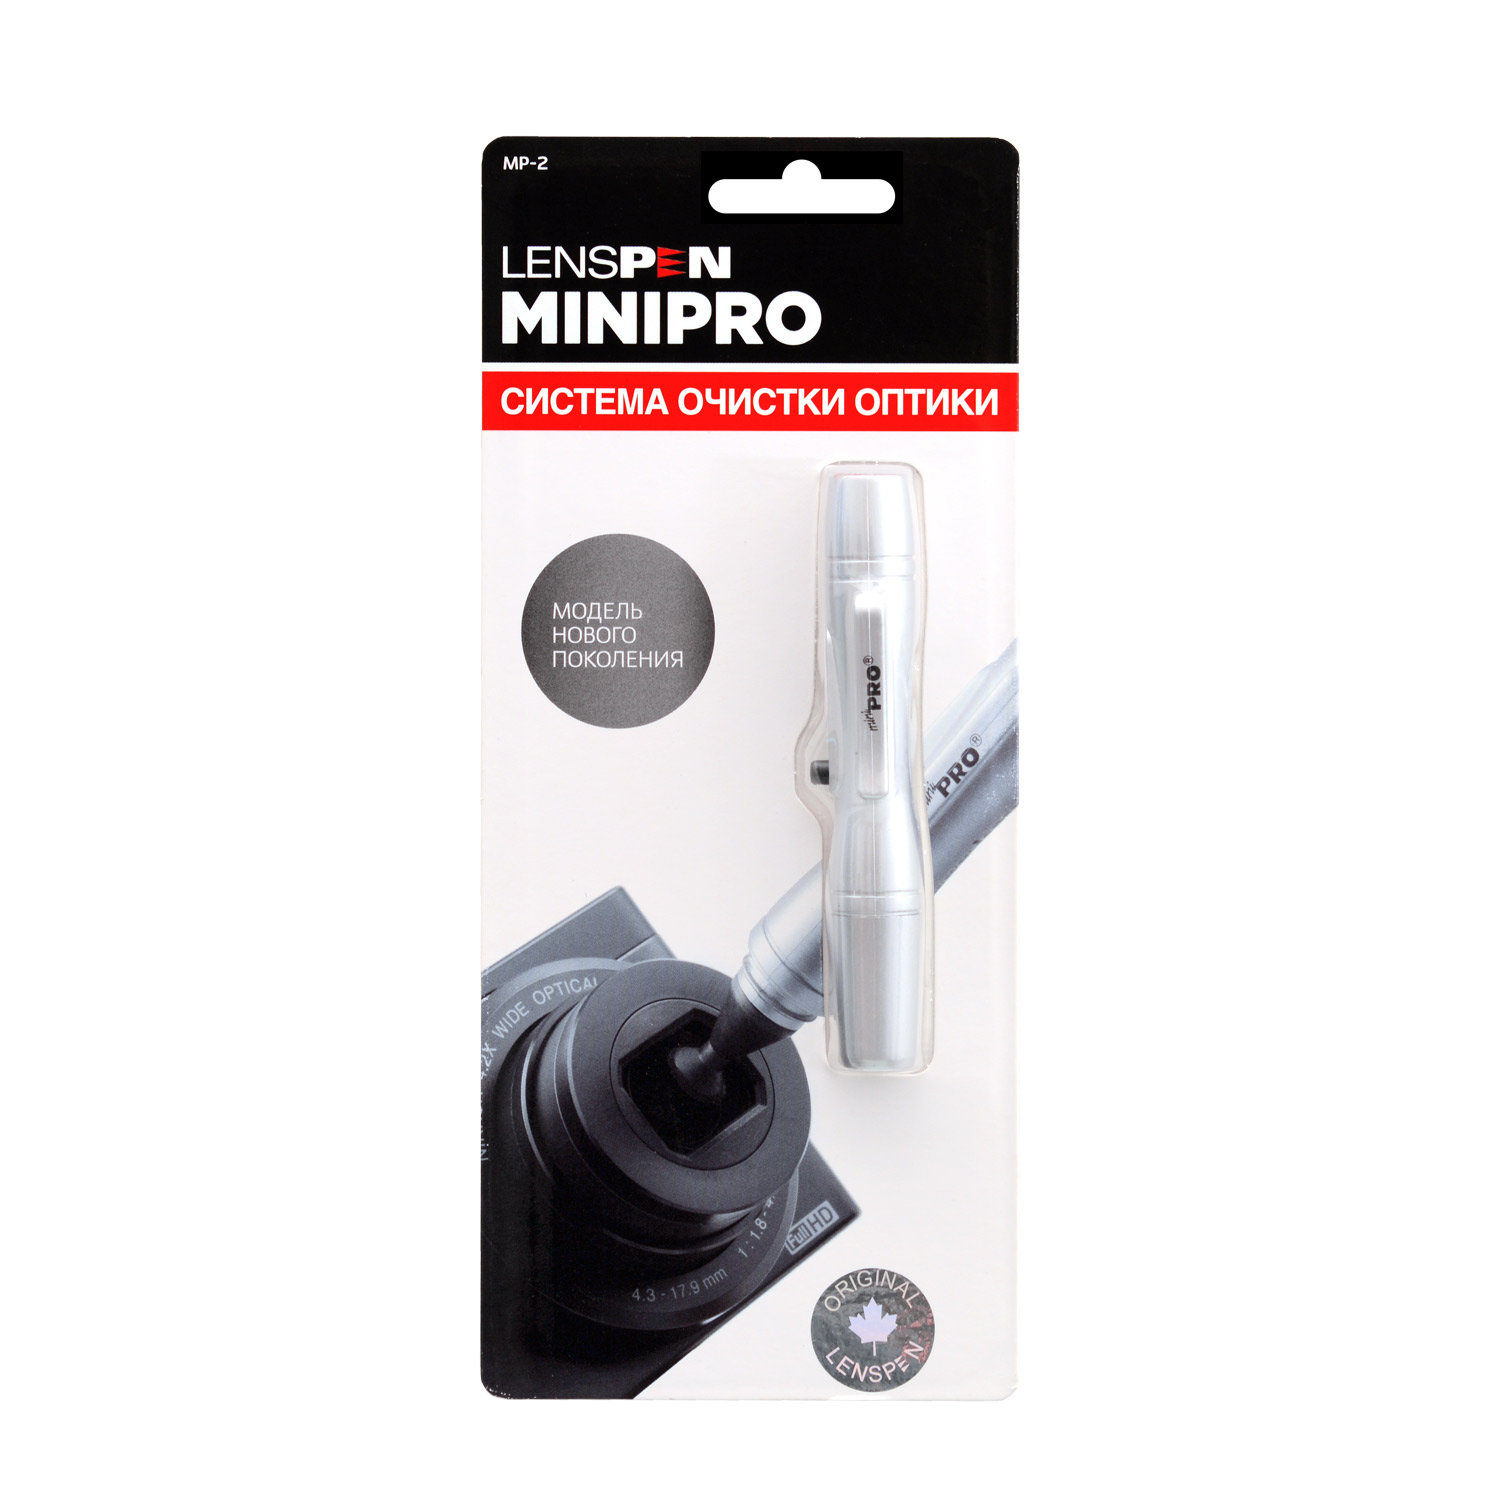 Карандаш для чистки оптики Lenspen MiniPro2 купить по оптимальной цене,  доставка по России, гарантия качества